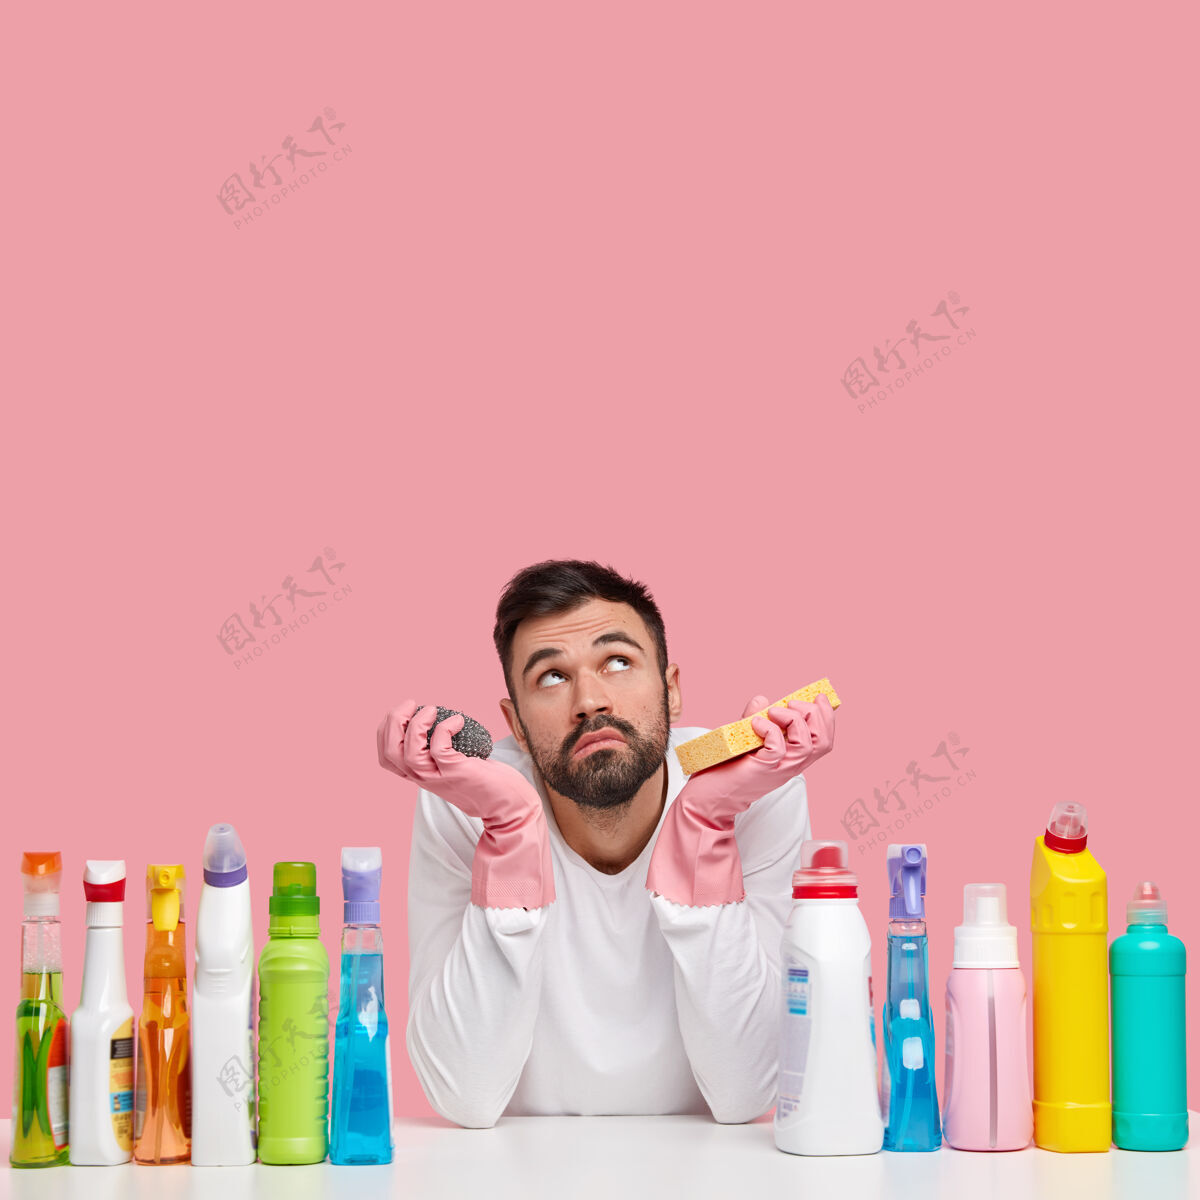 工作不开心的没刮胡子的男人神情悲伤地向上聚焦 想先打扫什么房间 用不同的洗涤剂忙瓶子不安